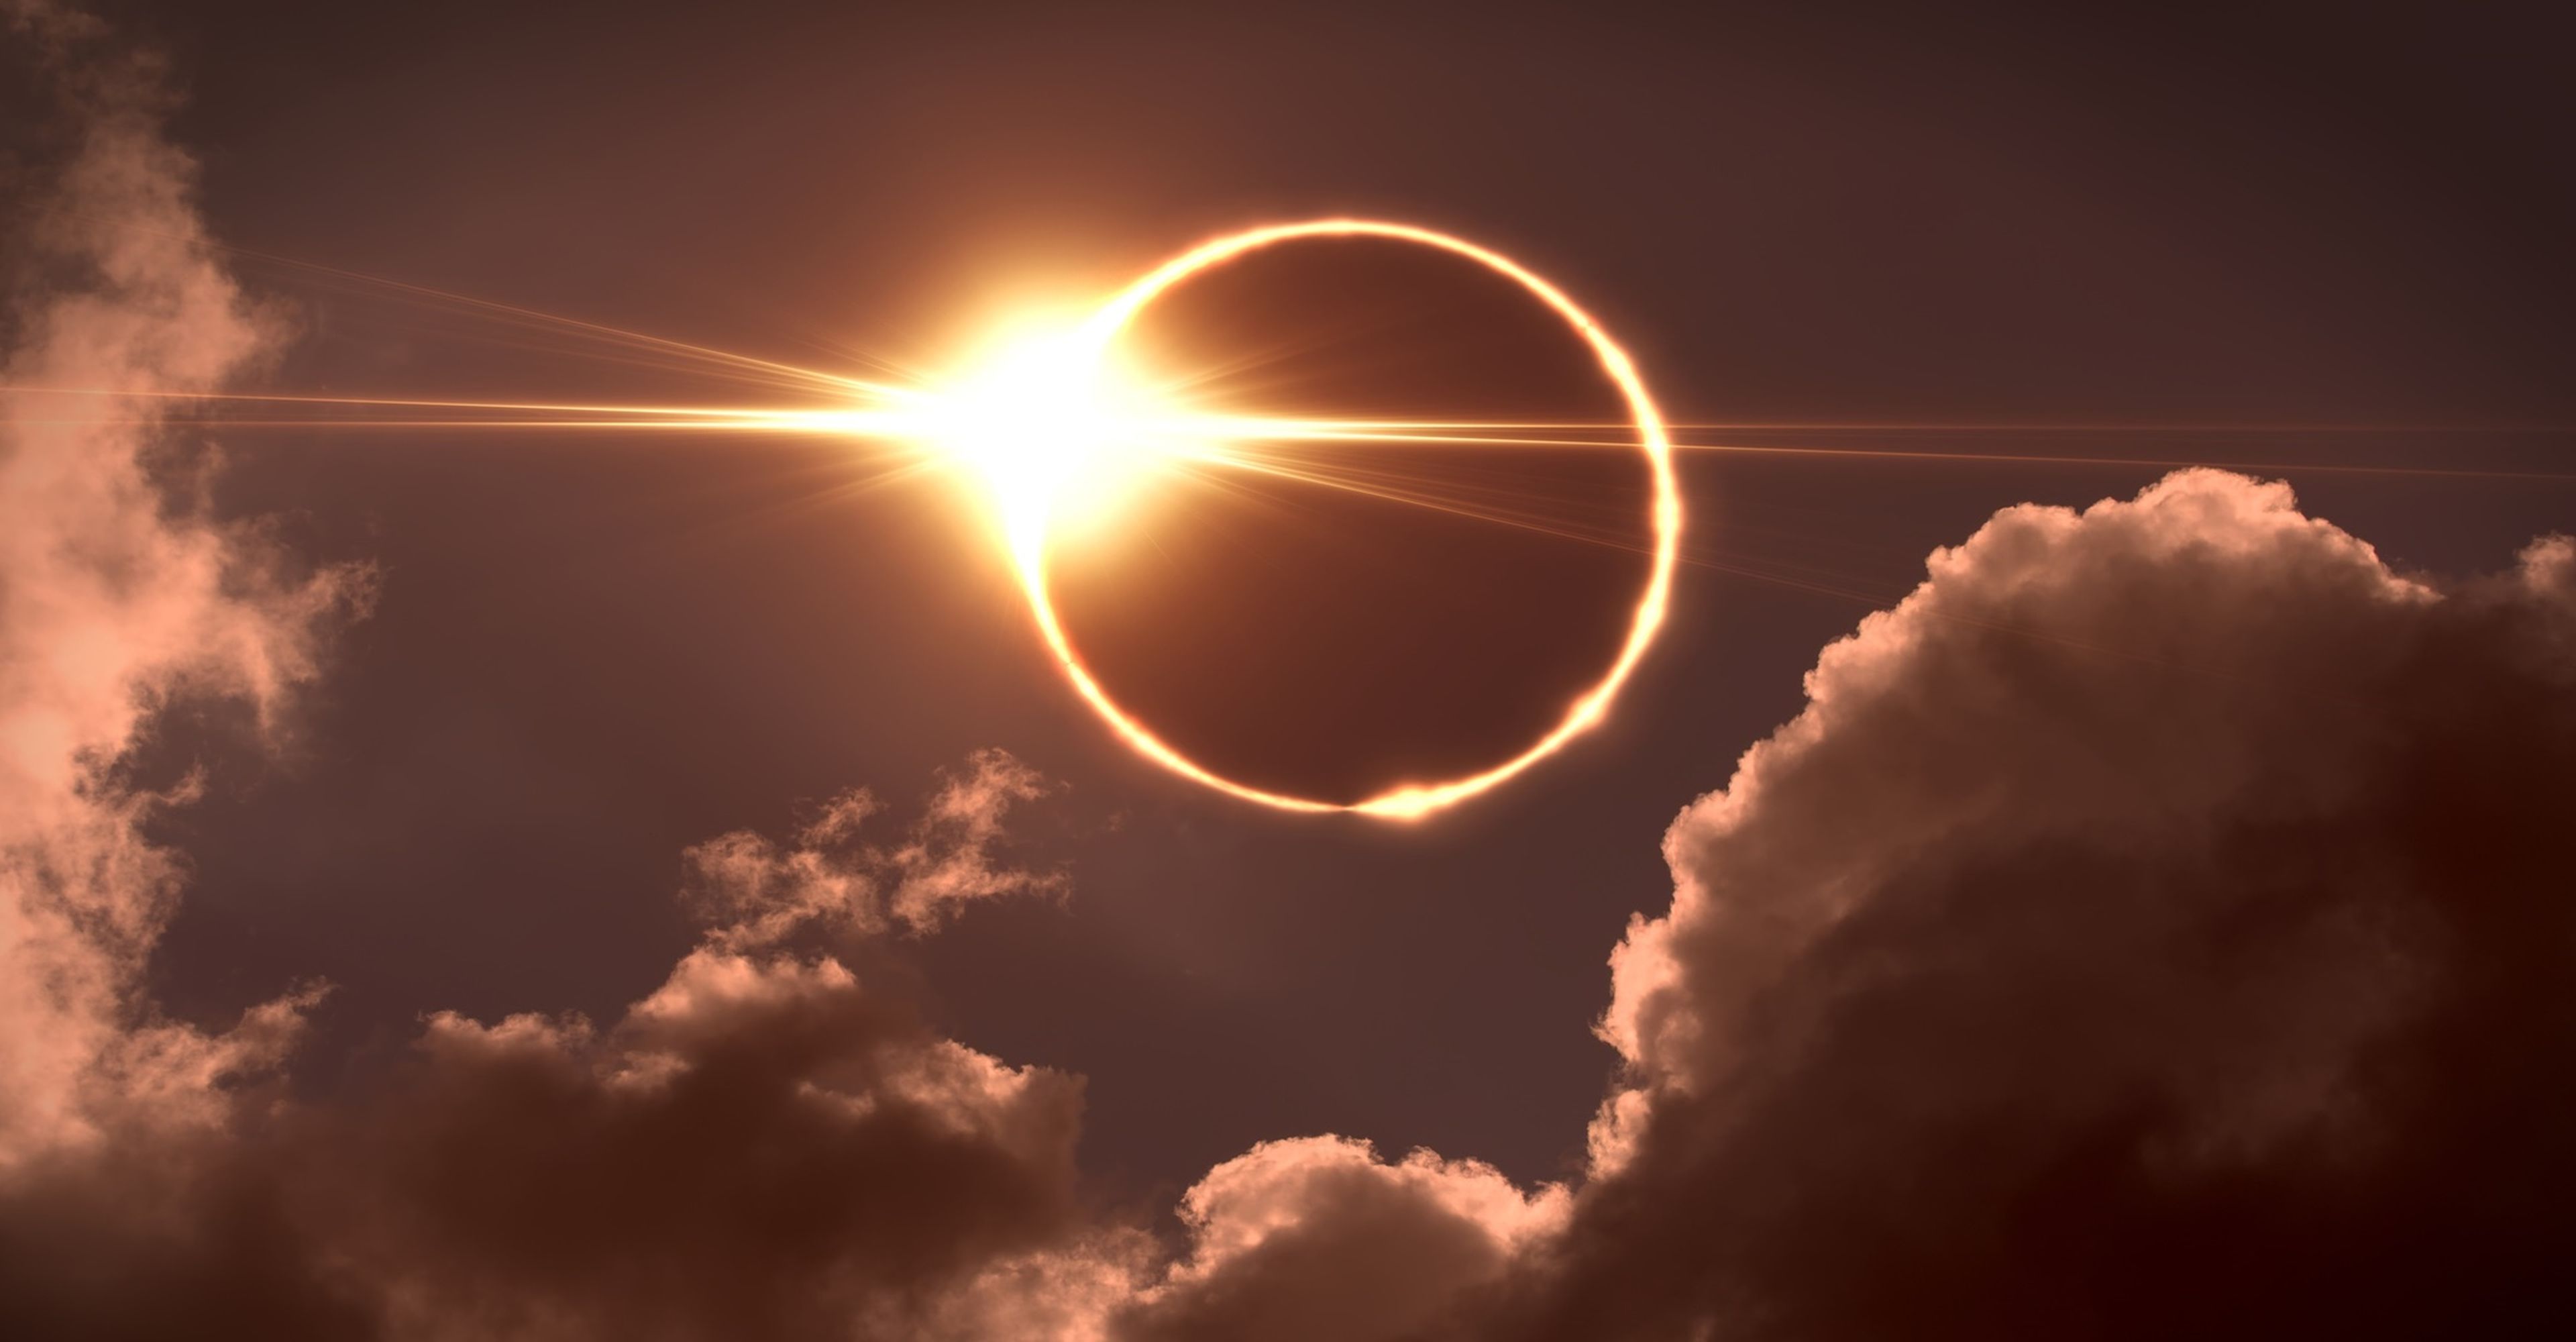 Porqué el eclipse solar de abril será diferente al resto